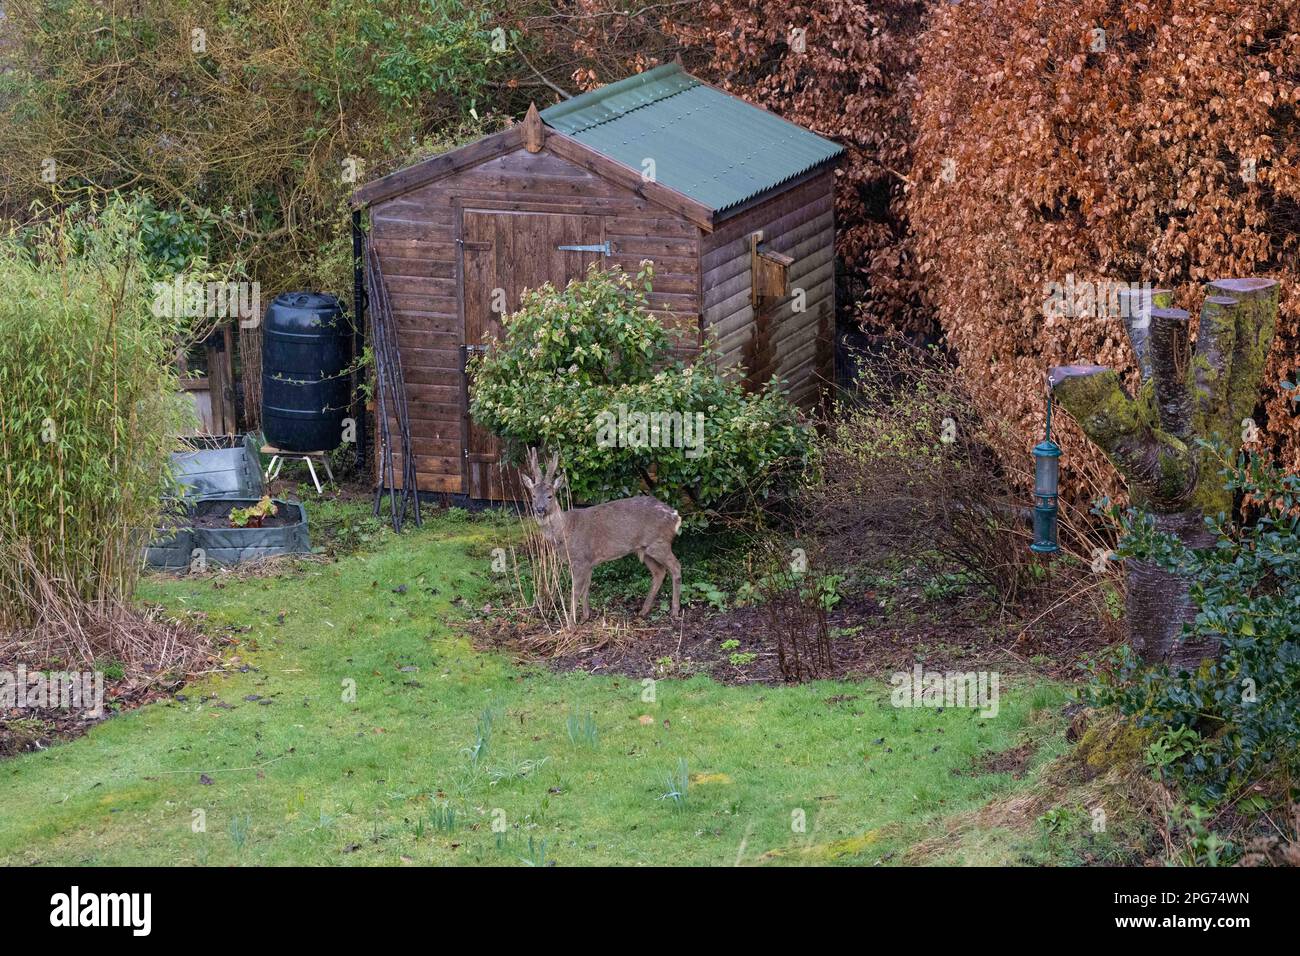 Roe deer in domestic garden - Killearn, Stirling Scotland Stock Photo